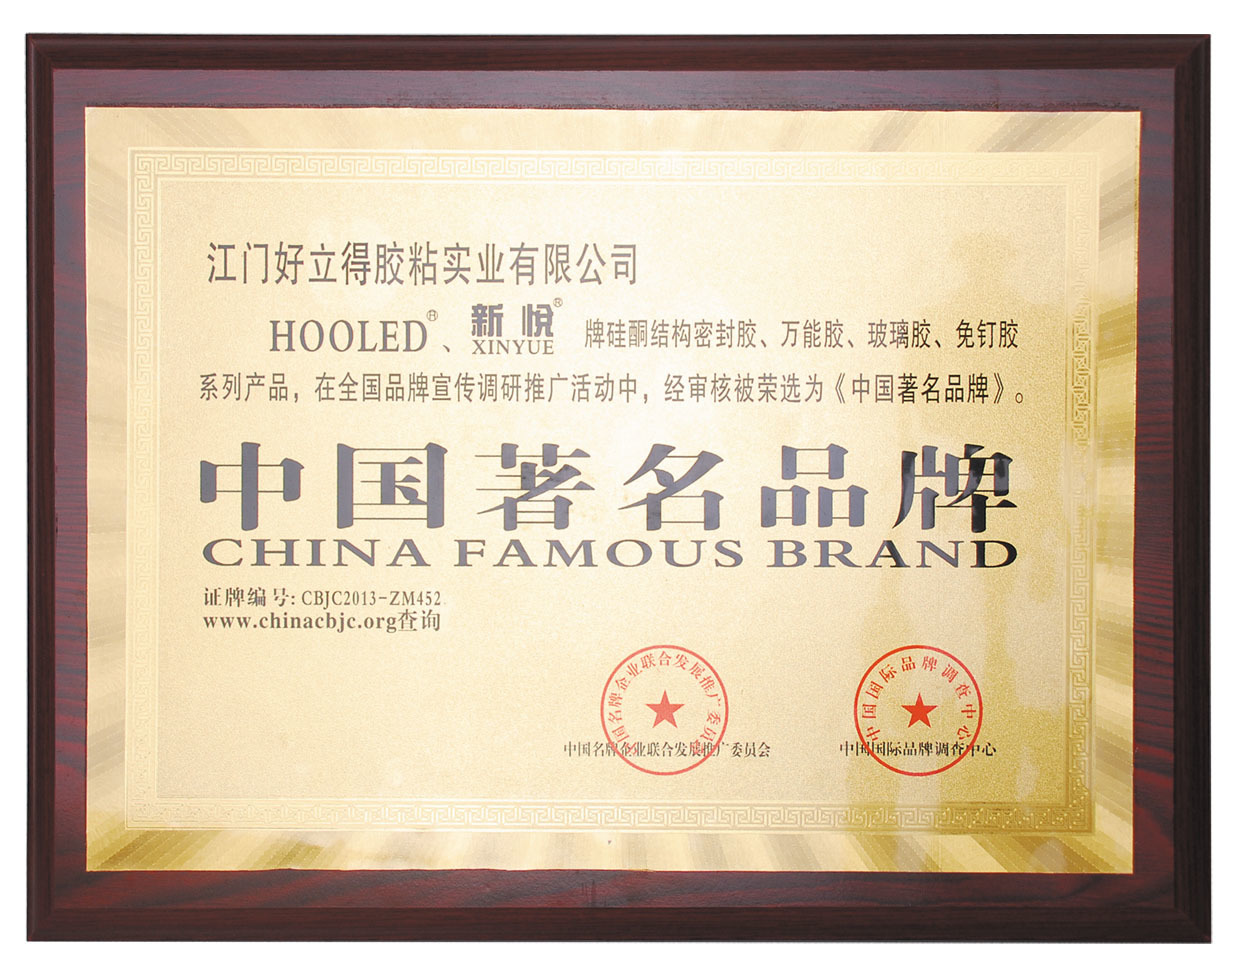 江門好立得膠粘實業有限公司通過ISO9001：2008國際質量管理體系認證。榮獲“中國著名品牌”稱號。